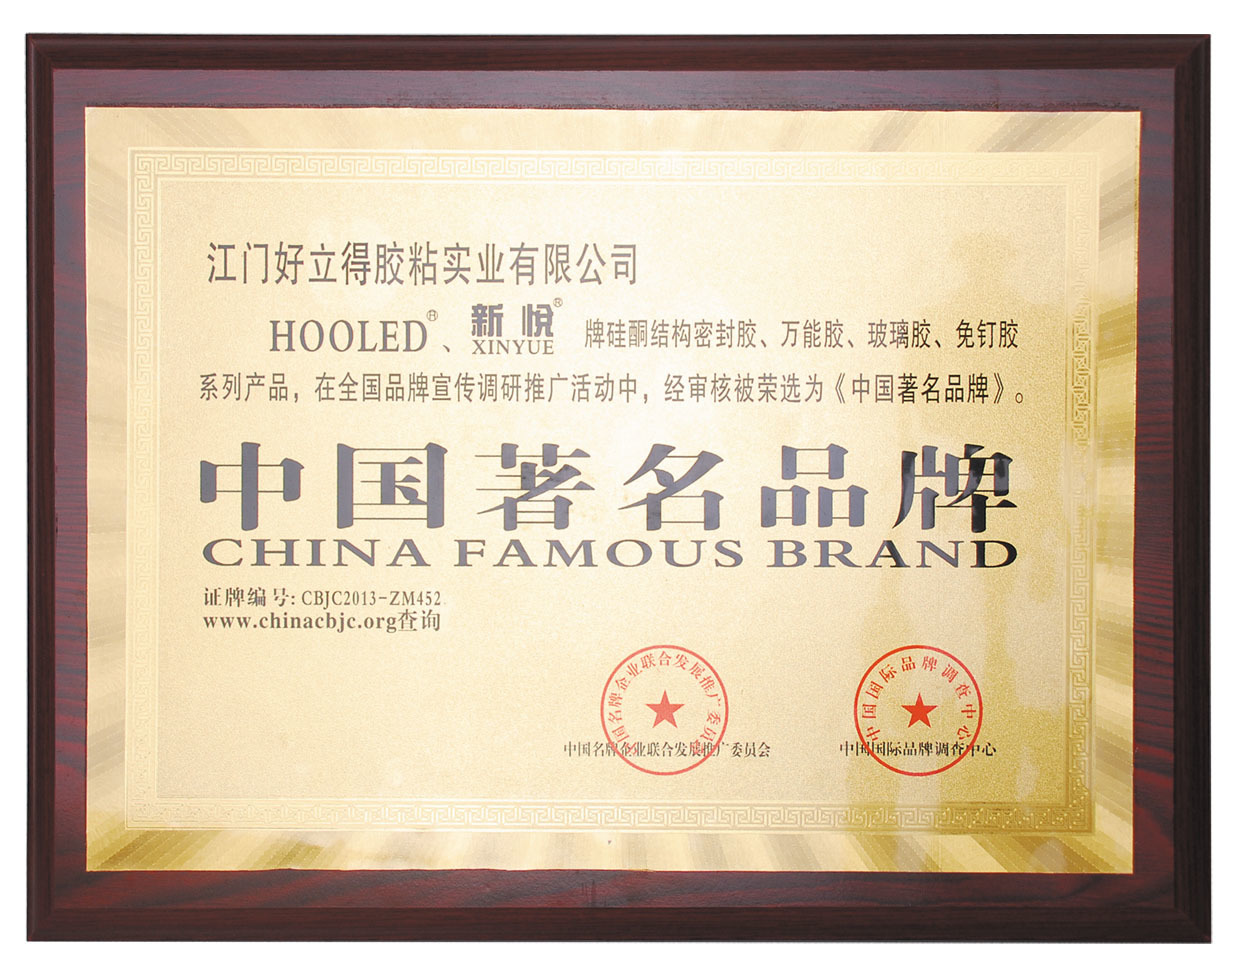 江門好立得膠粘實業有限公司通過ISO9001：2008國際質量管理體系認證。榮獲“中國著名品牌”稱號。